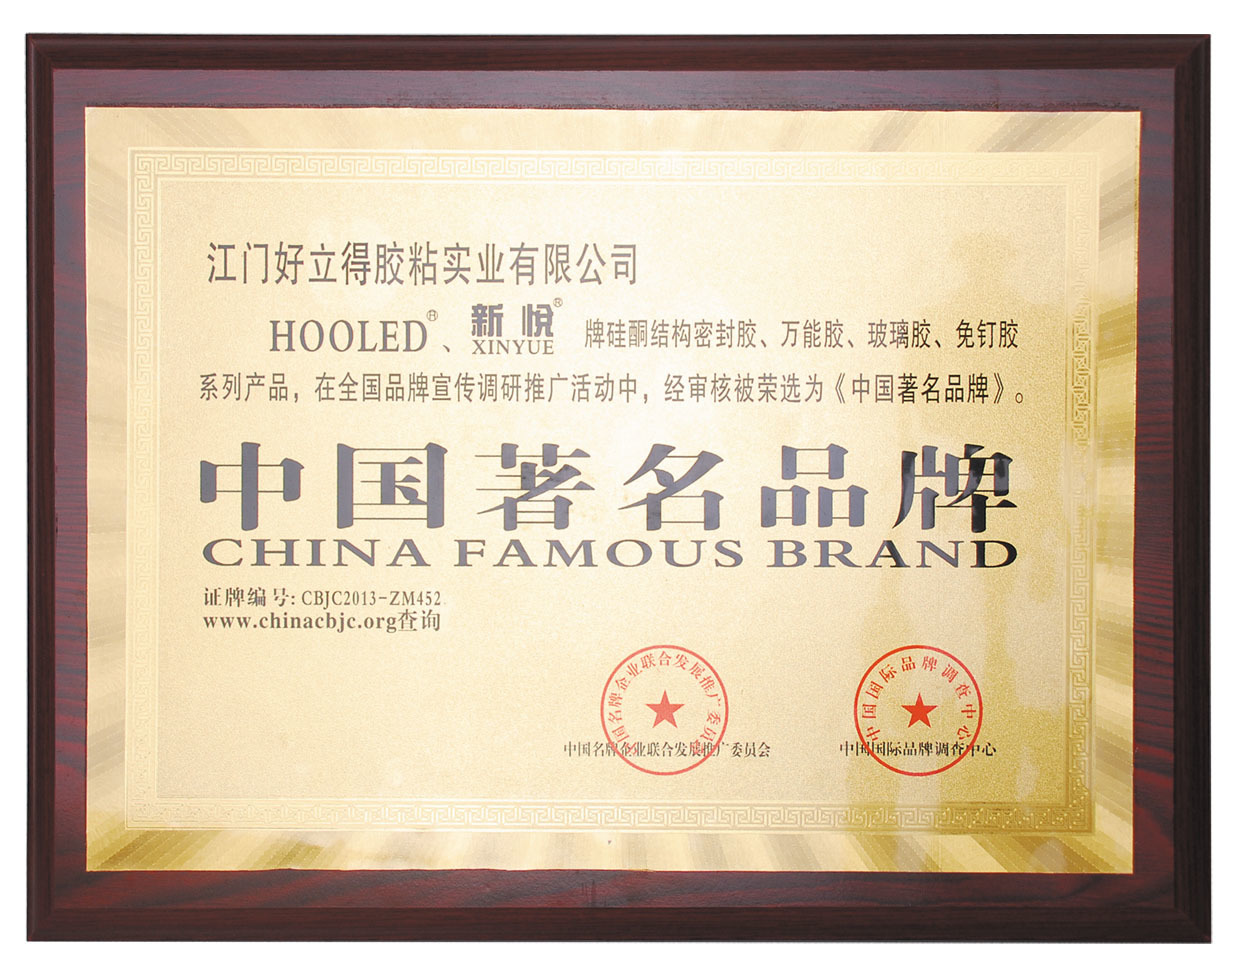 江門好立得膠粘實業有限公司通過ISO9001：2008國際質量管理體系認證。榮獲“中國著名品牌”稱號。